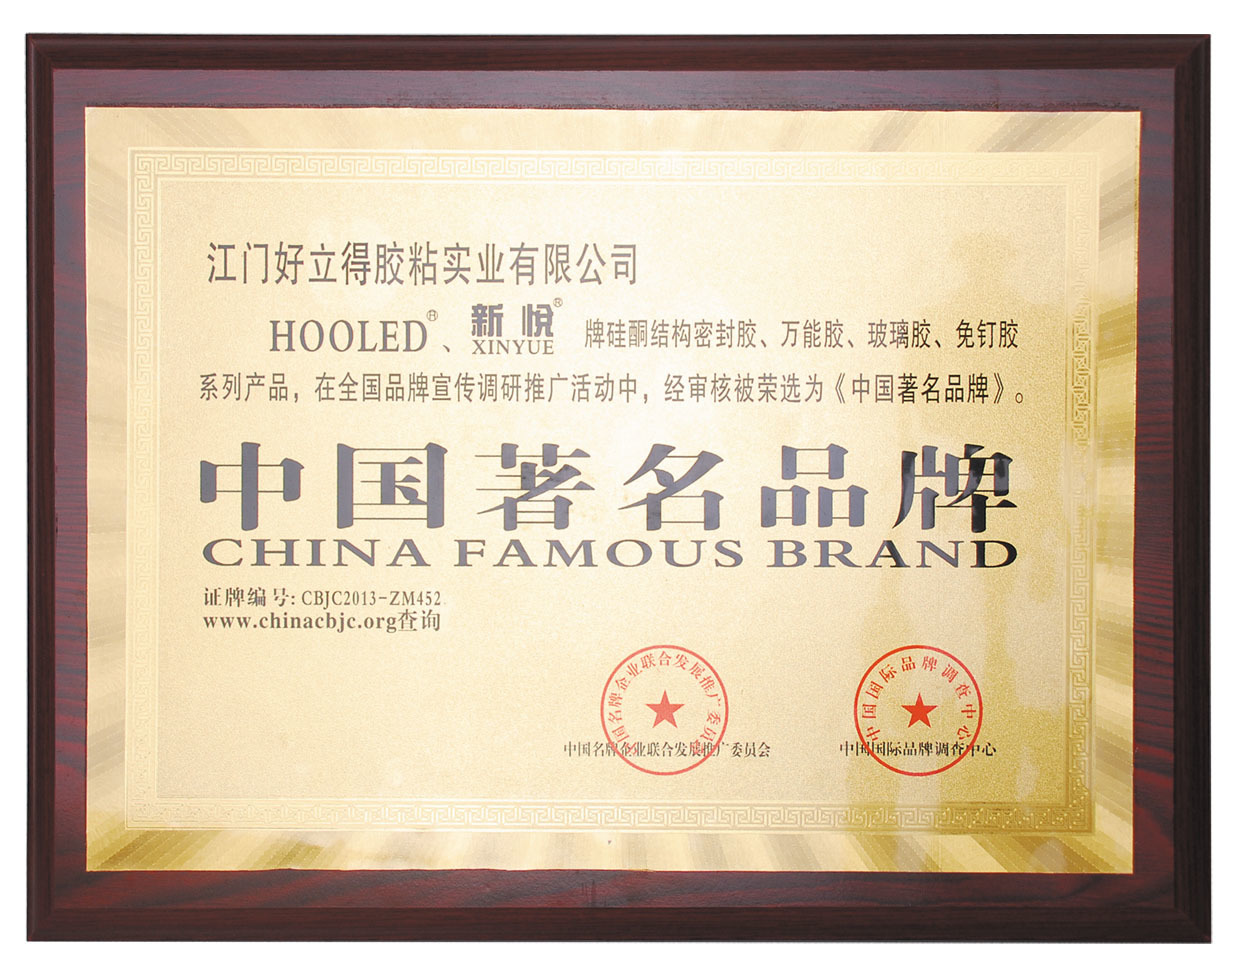 江門好立得膠粘實業有限公司通過ISO9001：2008國際質量管理體系認證。榮獲“中國著名品牌”稱號。